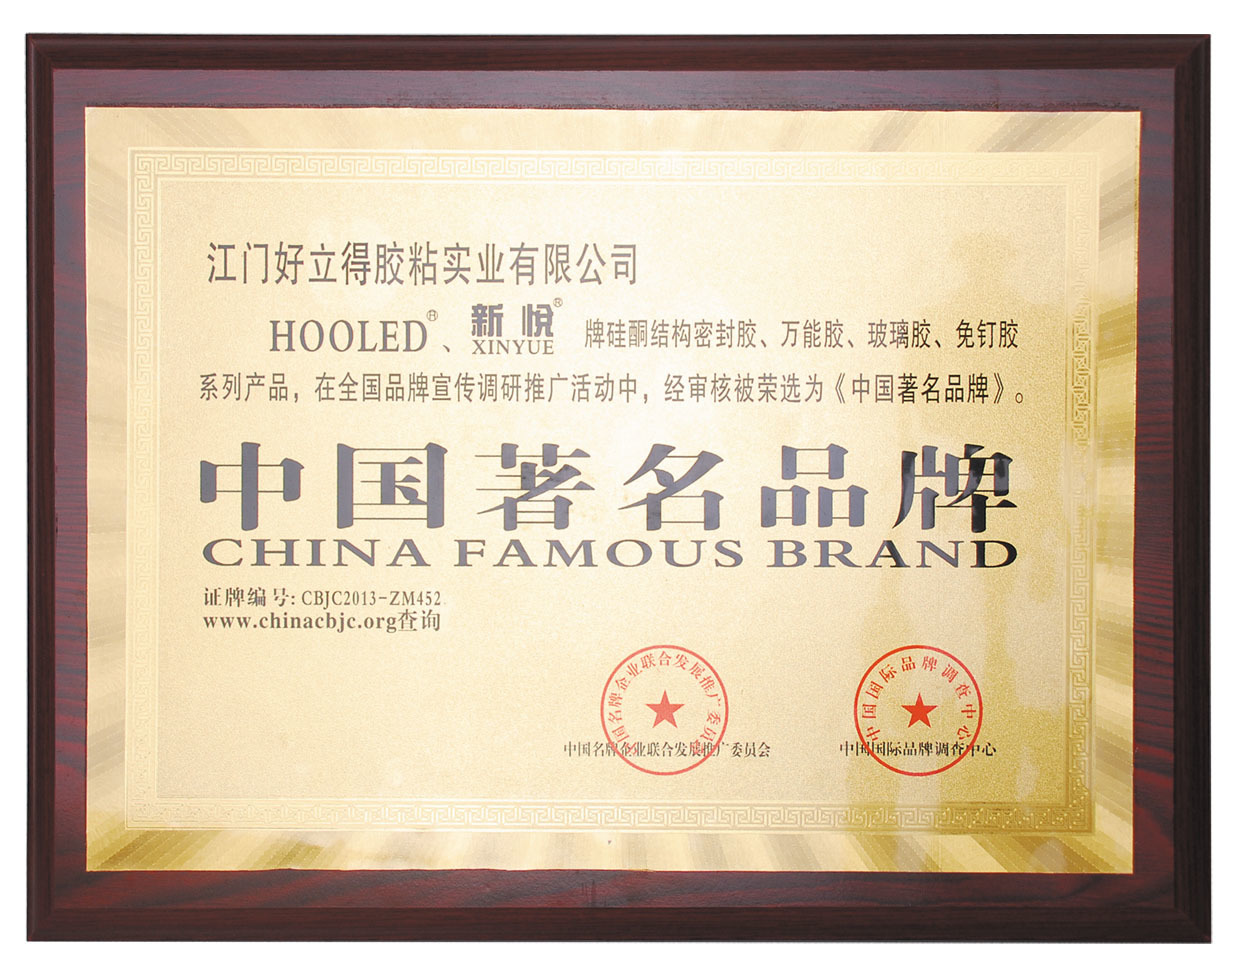 江門好立得膠粘實業有限公司通過ISO9001：2008國際質量管理體系認證。榮獲“中國著名品牌”稱號。